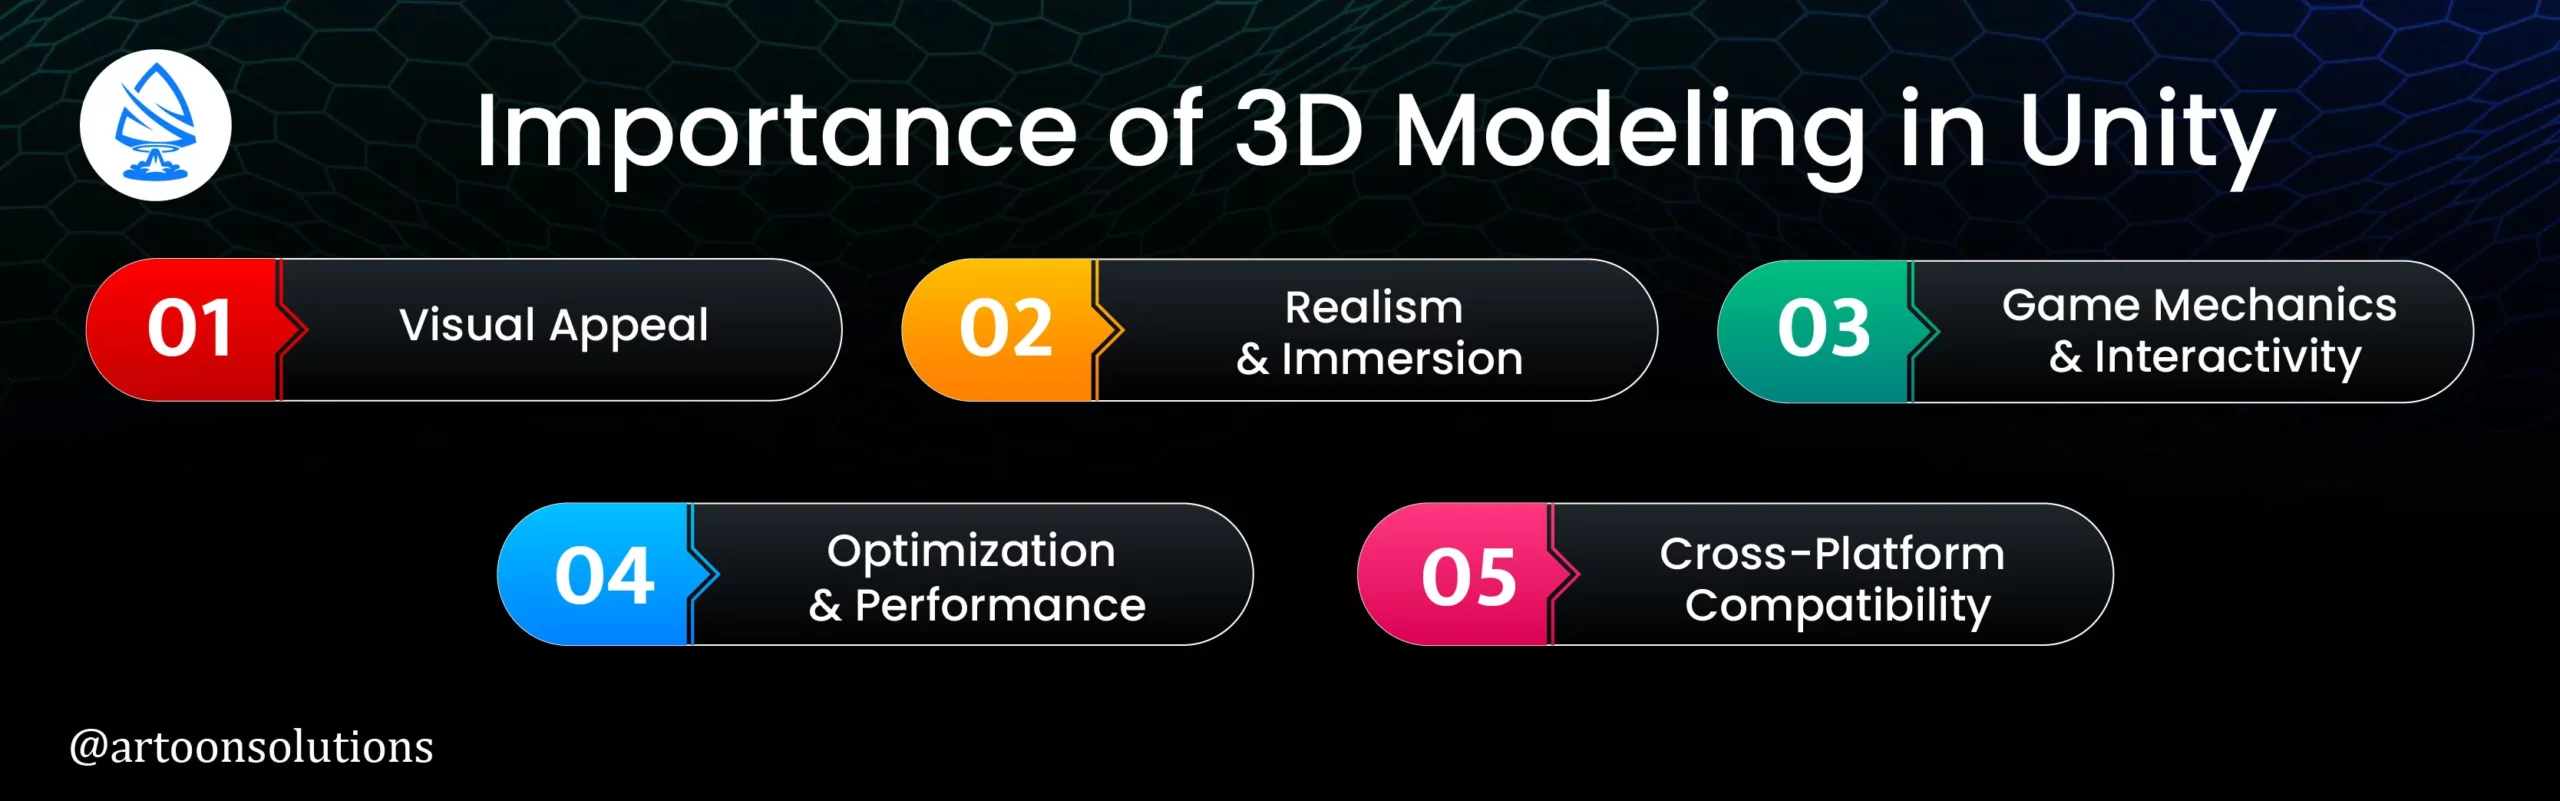 3D Modeling in Unity